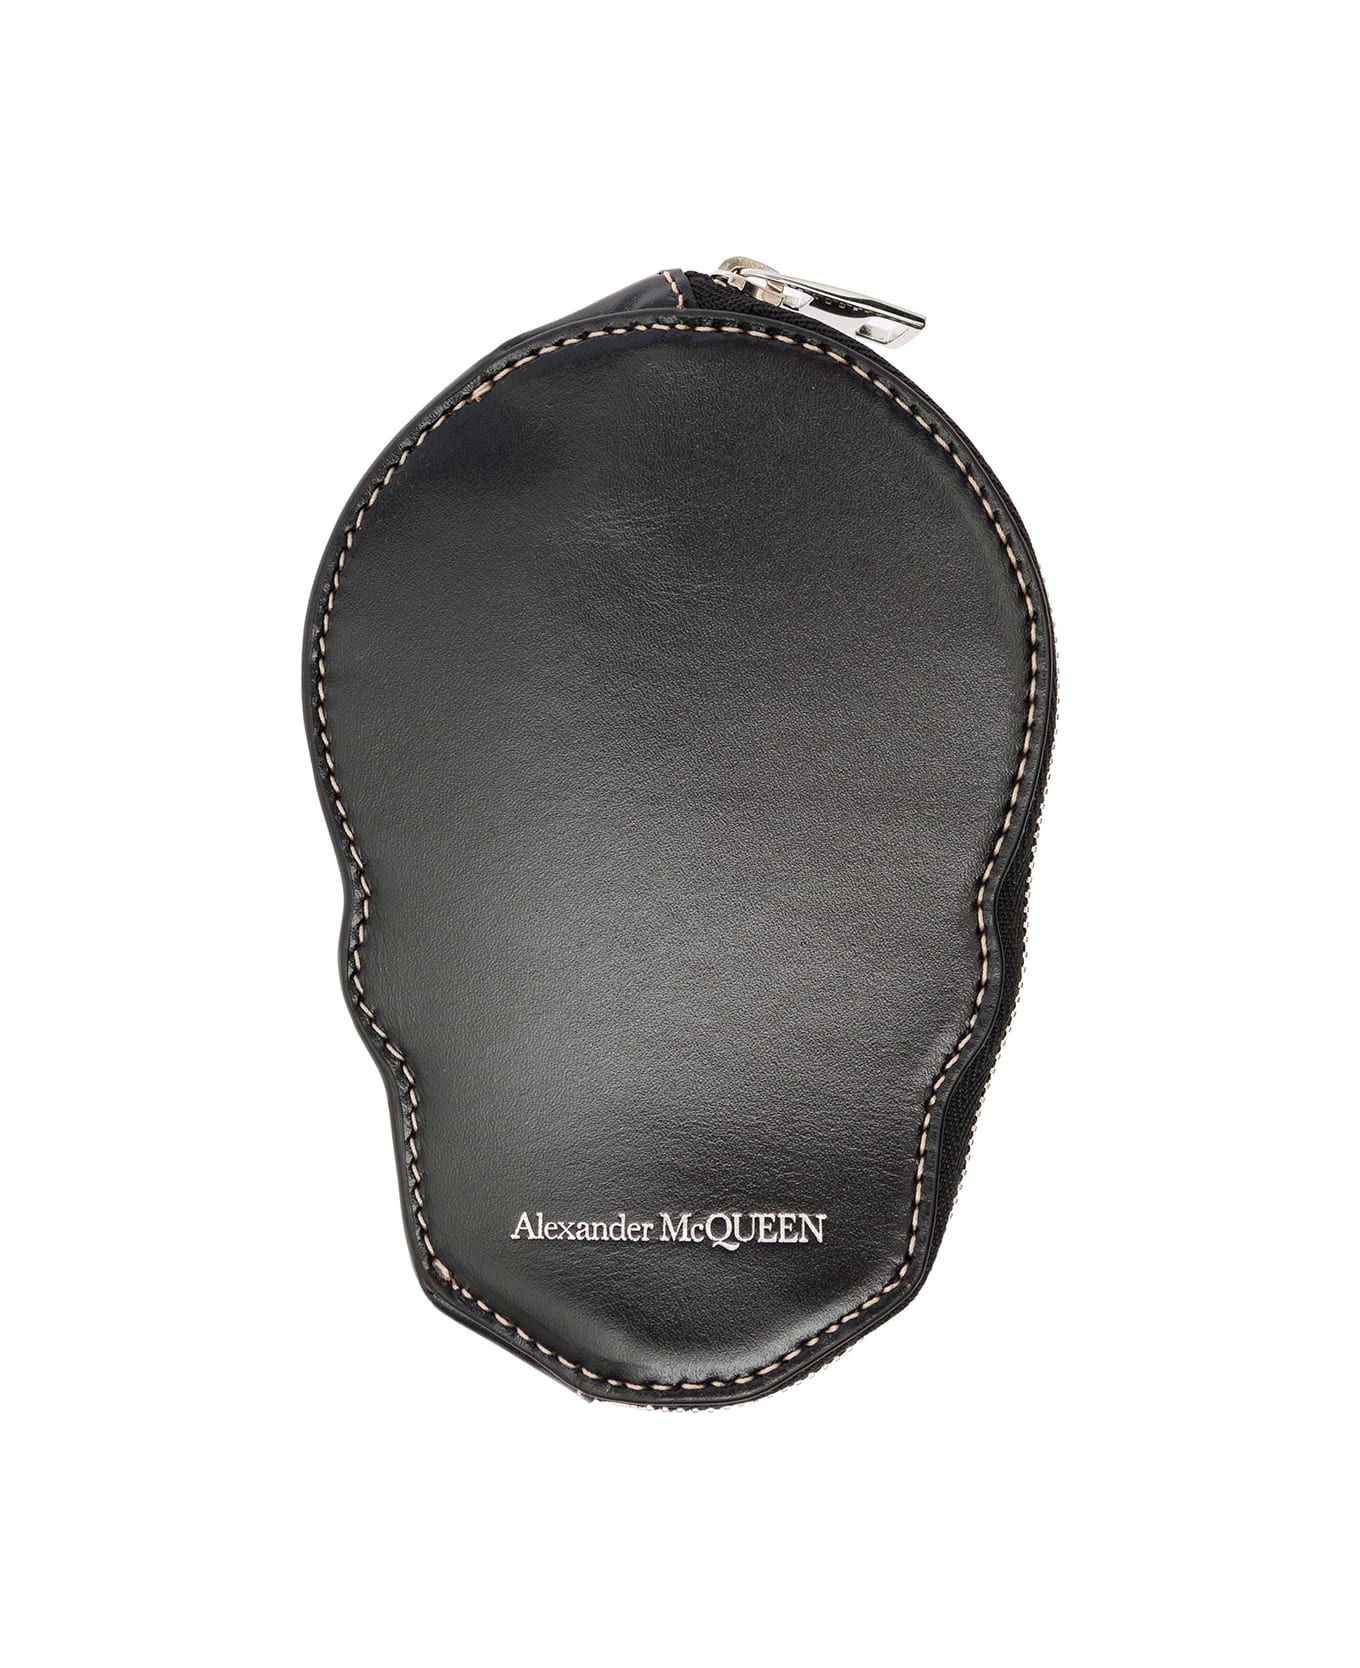 Alexander McQueen Black Skull-shaped Card-holder With Zip In Leather Man Alexander Mcqueen - Black 財布